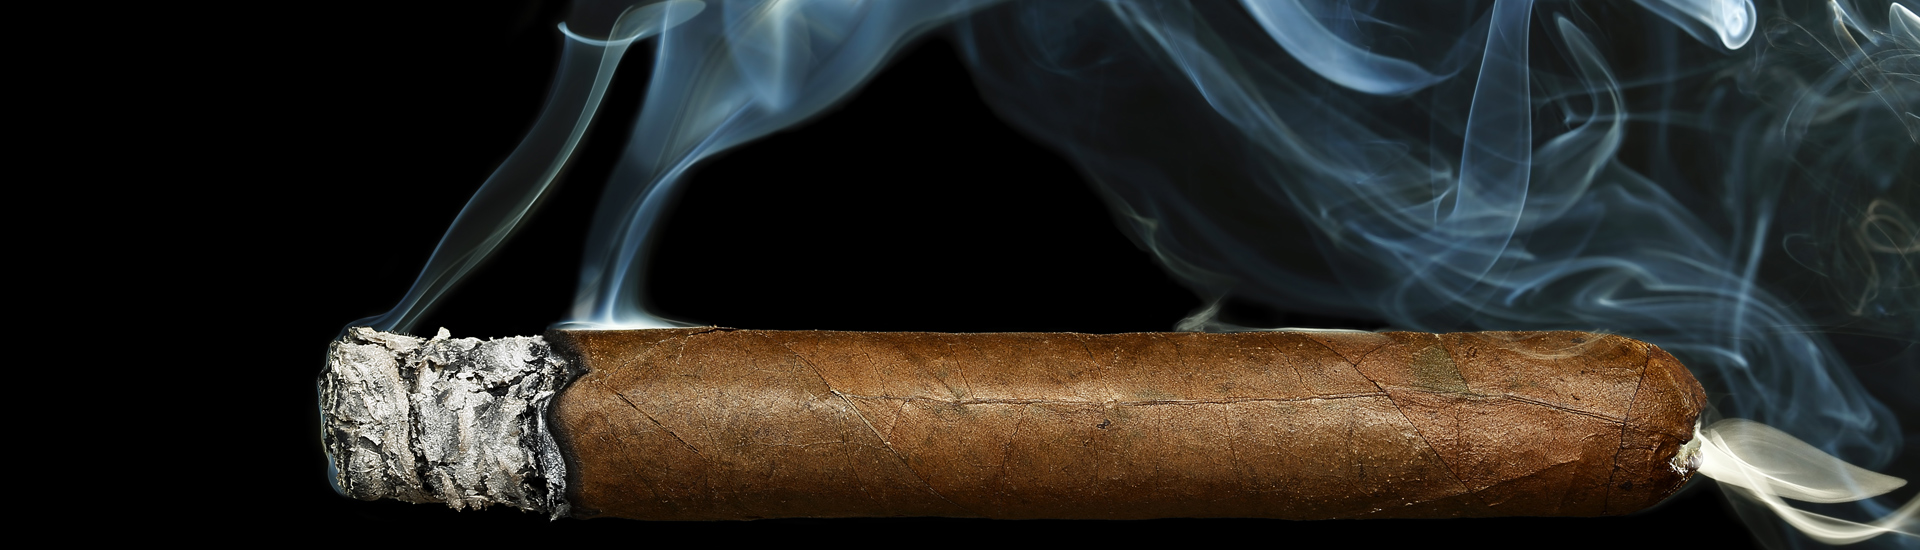 Cigar Burning With White Smoke